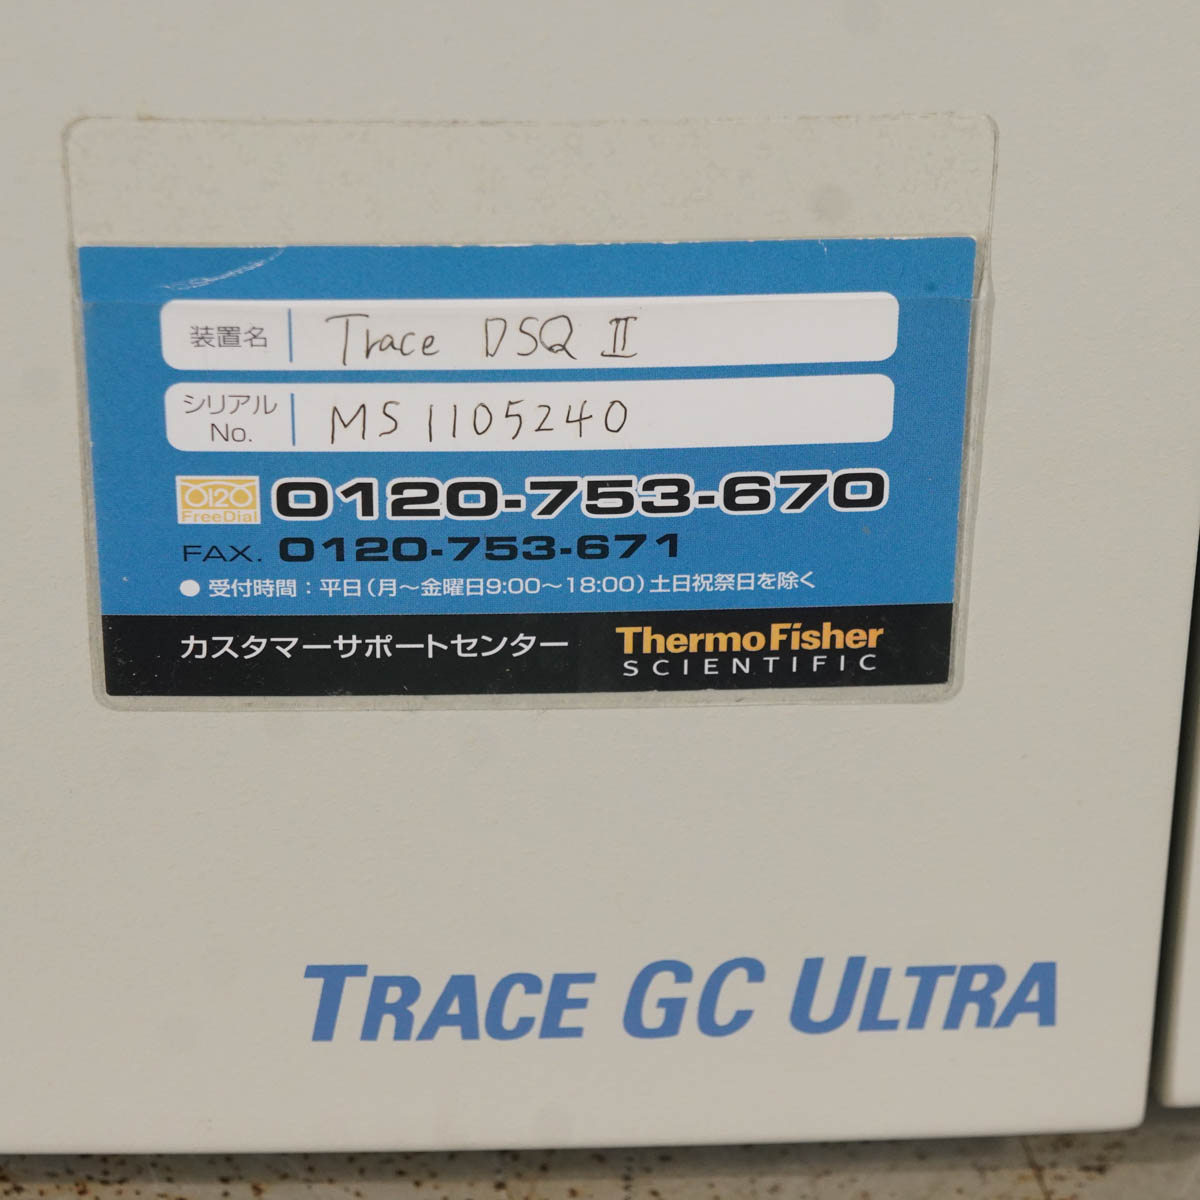 JB]USED 現状販売 セット Thermo Trace DSQ II GC ULTRA K27300000000080 GAS  CHROMATOGRAPH ガスクロマトグラフ HS TRI...[ST04257-0001] 分析機器,GC(ガスクロマトグラフ) 中古販売 分析機器計測器総合商社ディルウィングス